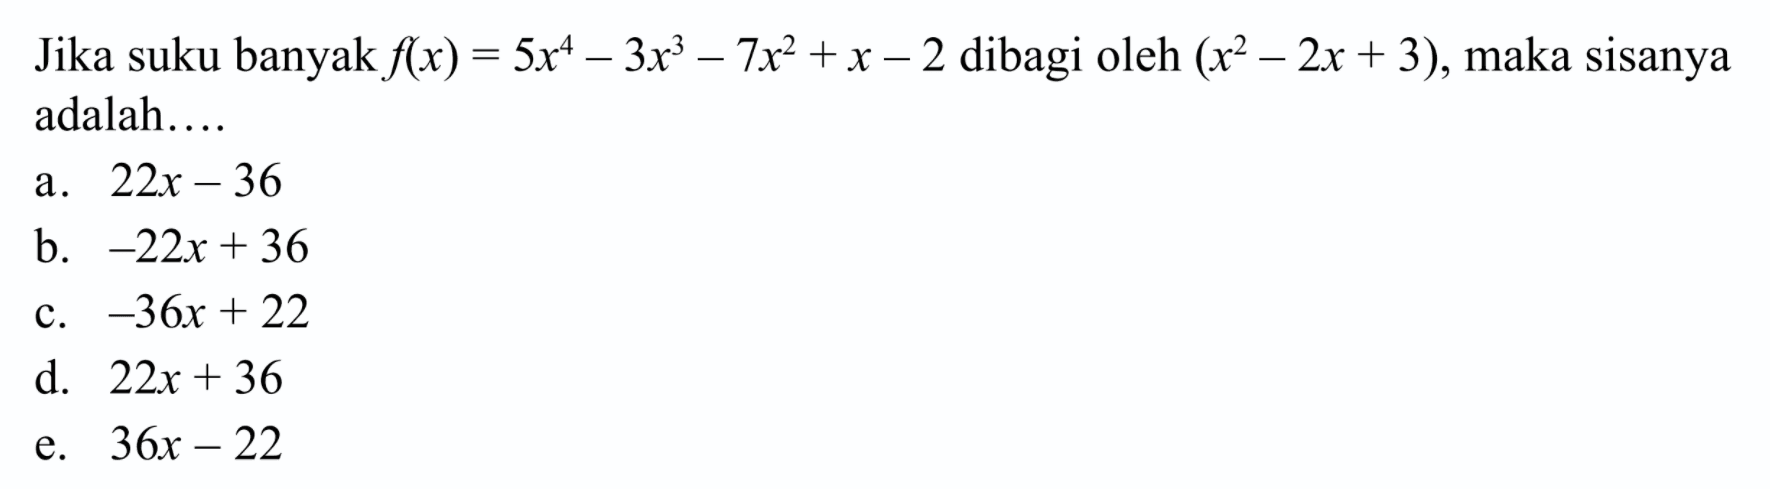 Jika suku banyak f(x)=5x^4-3x^3-7x^2+x-2 dibagi oleh (x^2-2x+3), maka sisanya adalah ...